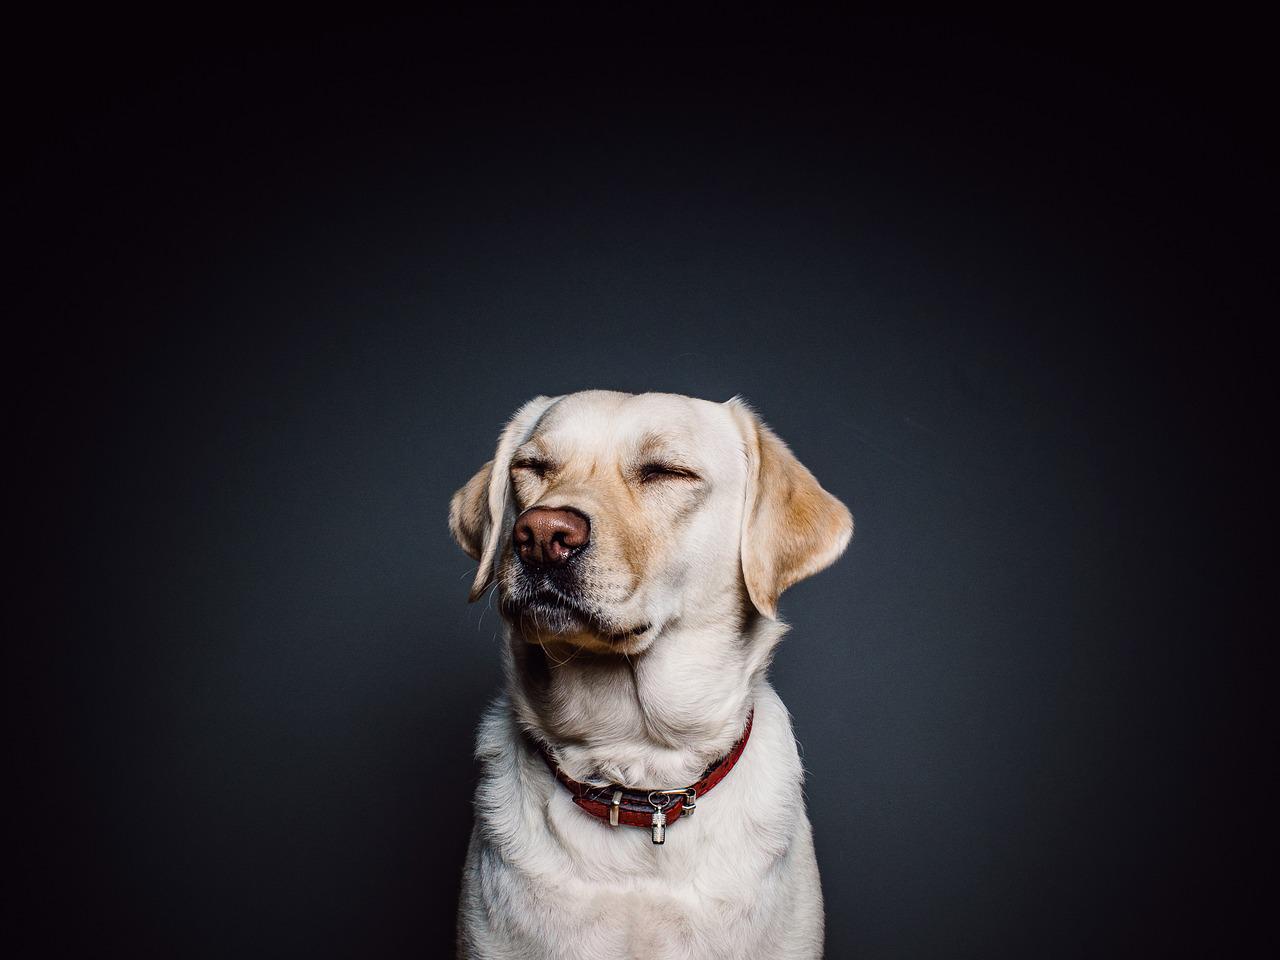 Najlepsze rasy psów do terapii i asystencji: wsparcie emocjonalne i fizyczne